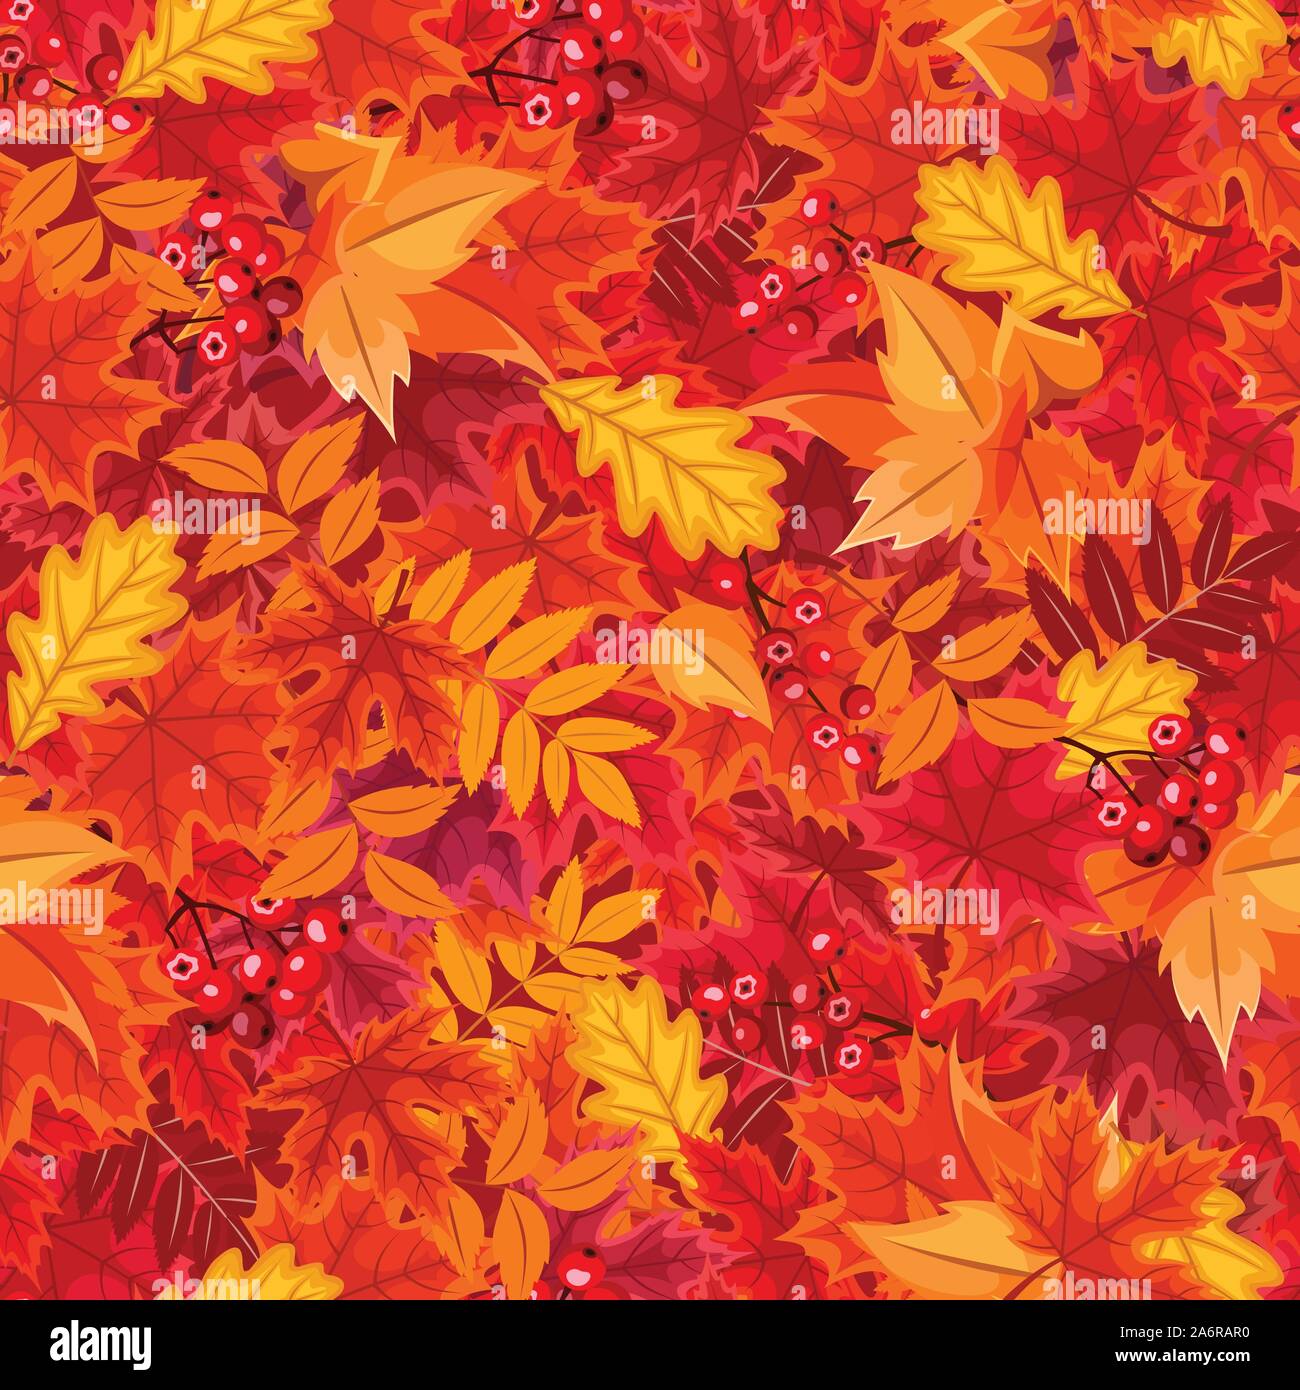 Vector de fondo sin fisuras con rojo y naranja de las hojas en otoño. Ilustración del Vector